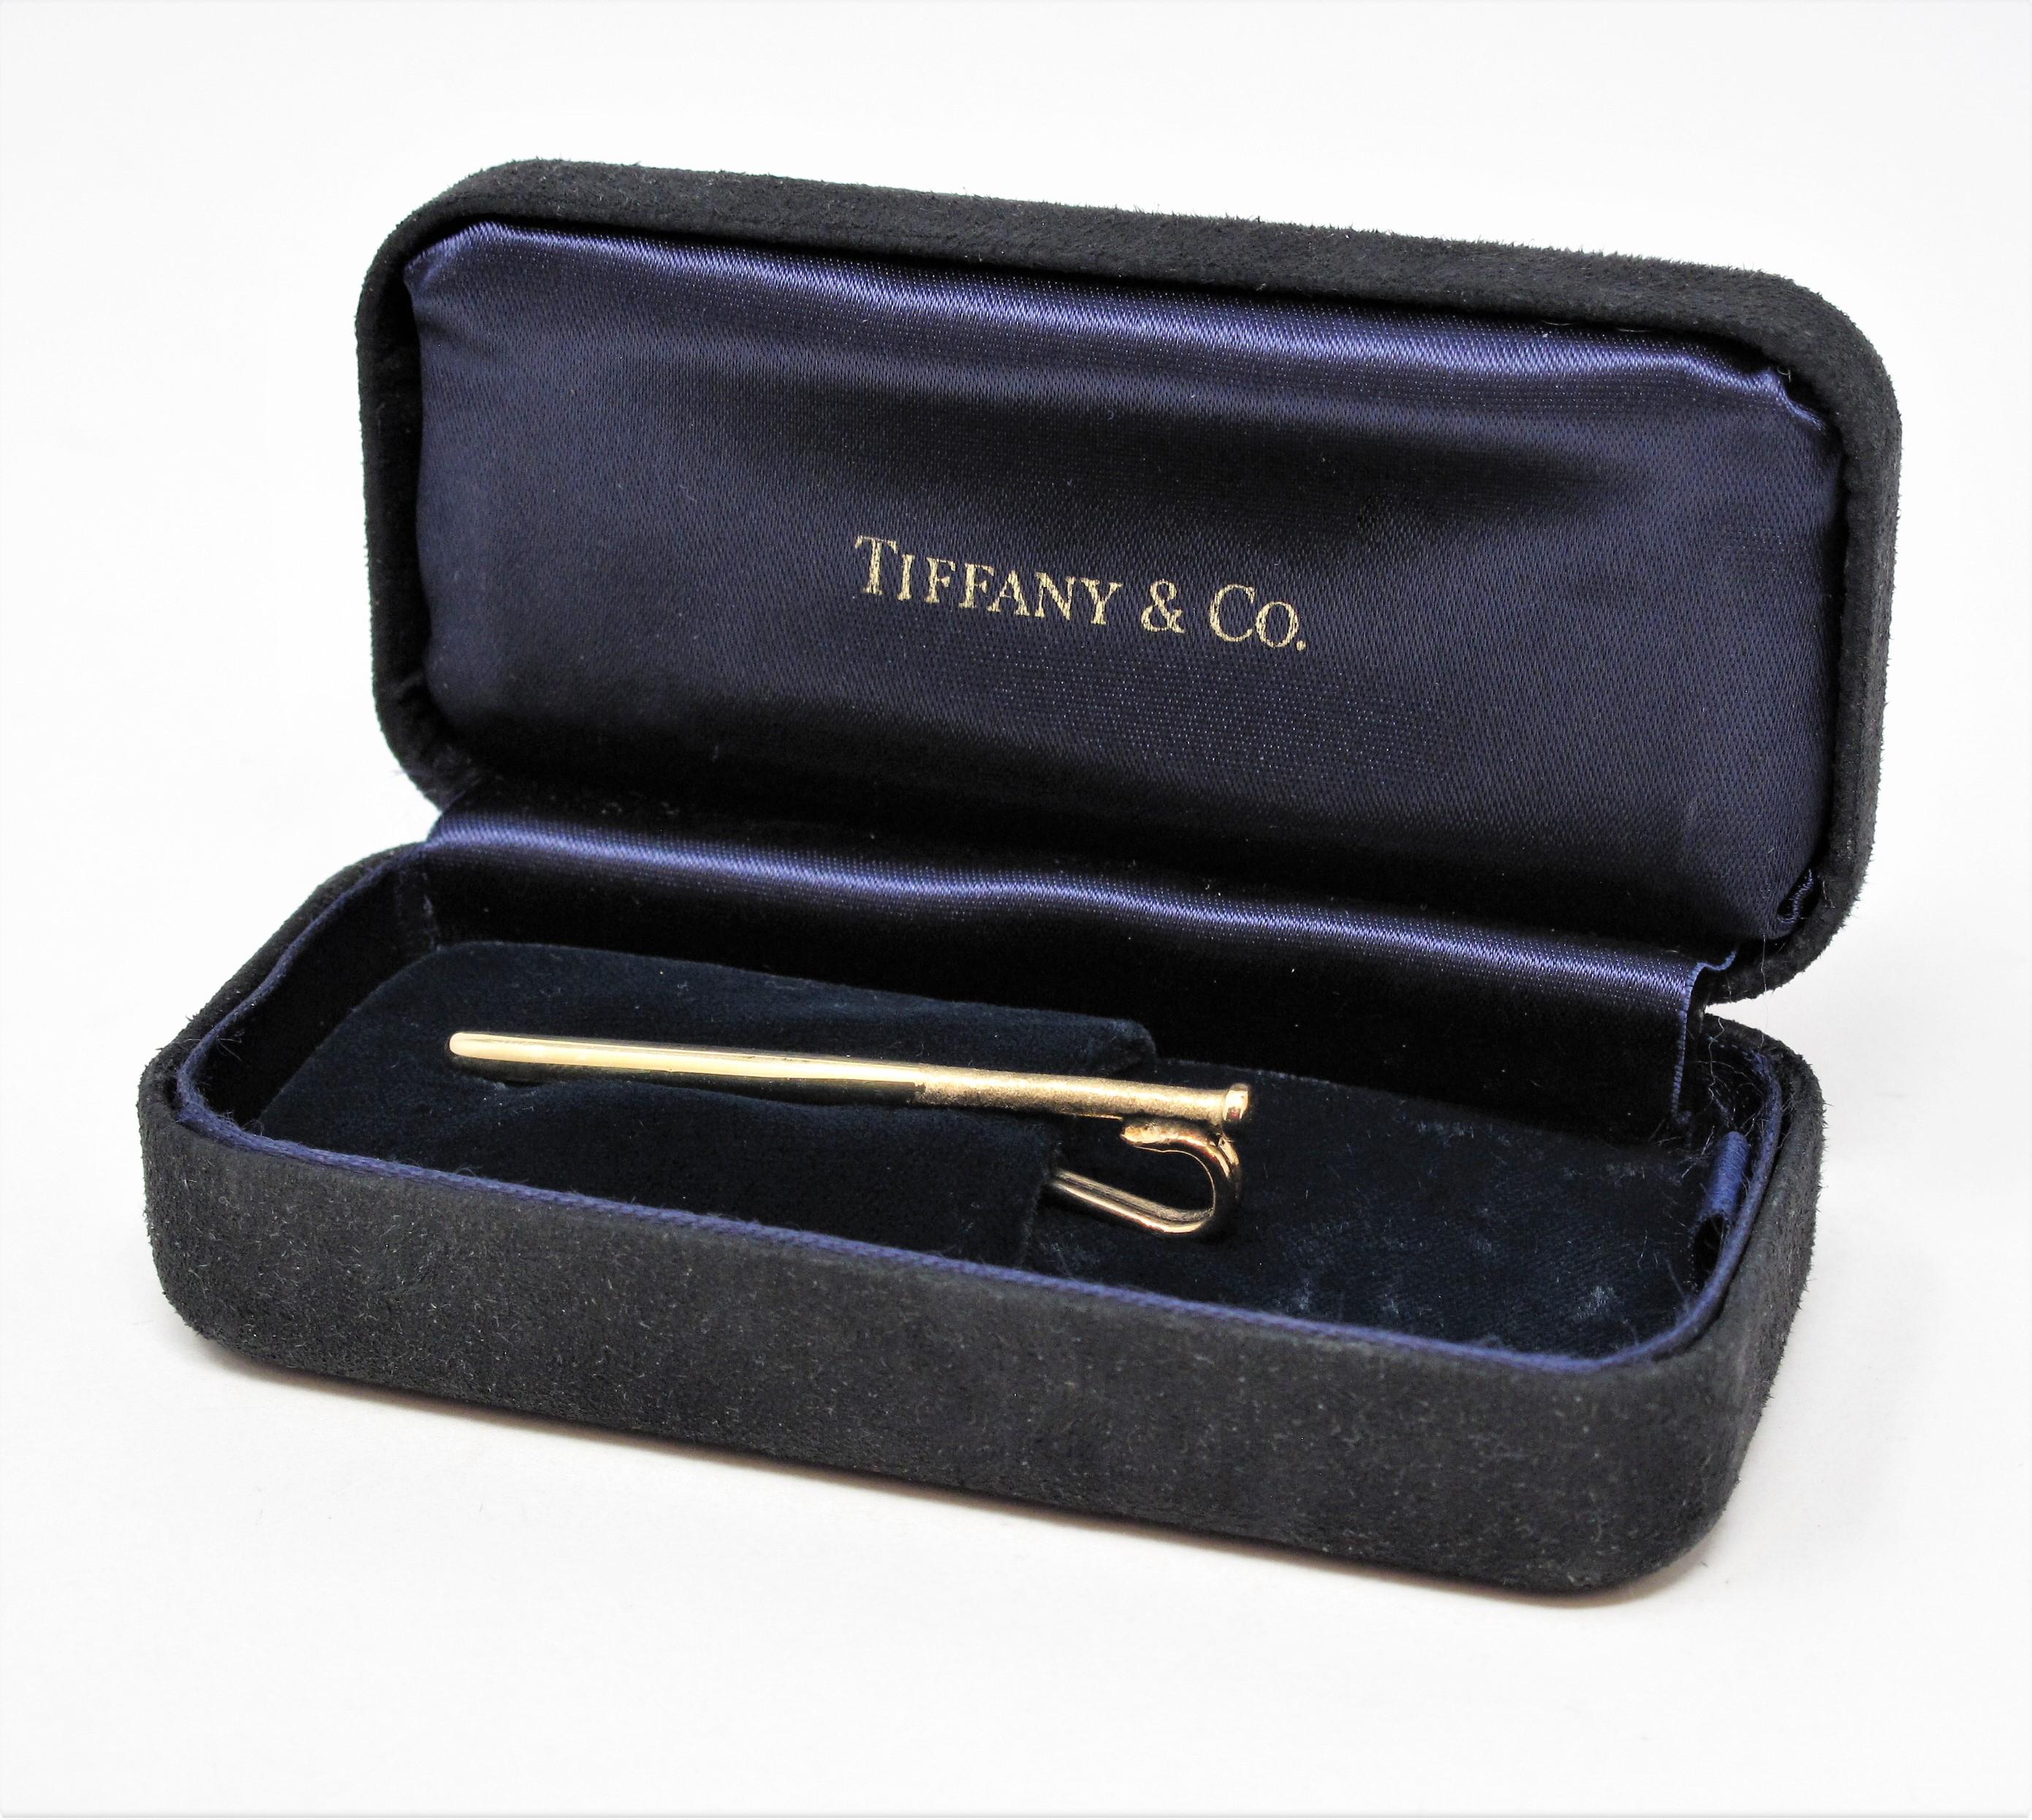 Seltene Vintage Tiffany & Co. Herren Baseballschläger Geldklammer / Krawattenhalter in 14 Karat Gelbgold. Dieses elegante und vielseitige Stück ist perfekt für die Sportbegeisterte in Ihrem Leben!

Dieses einzigartige Stück von Tiffany & Co.